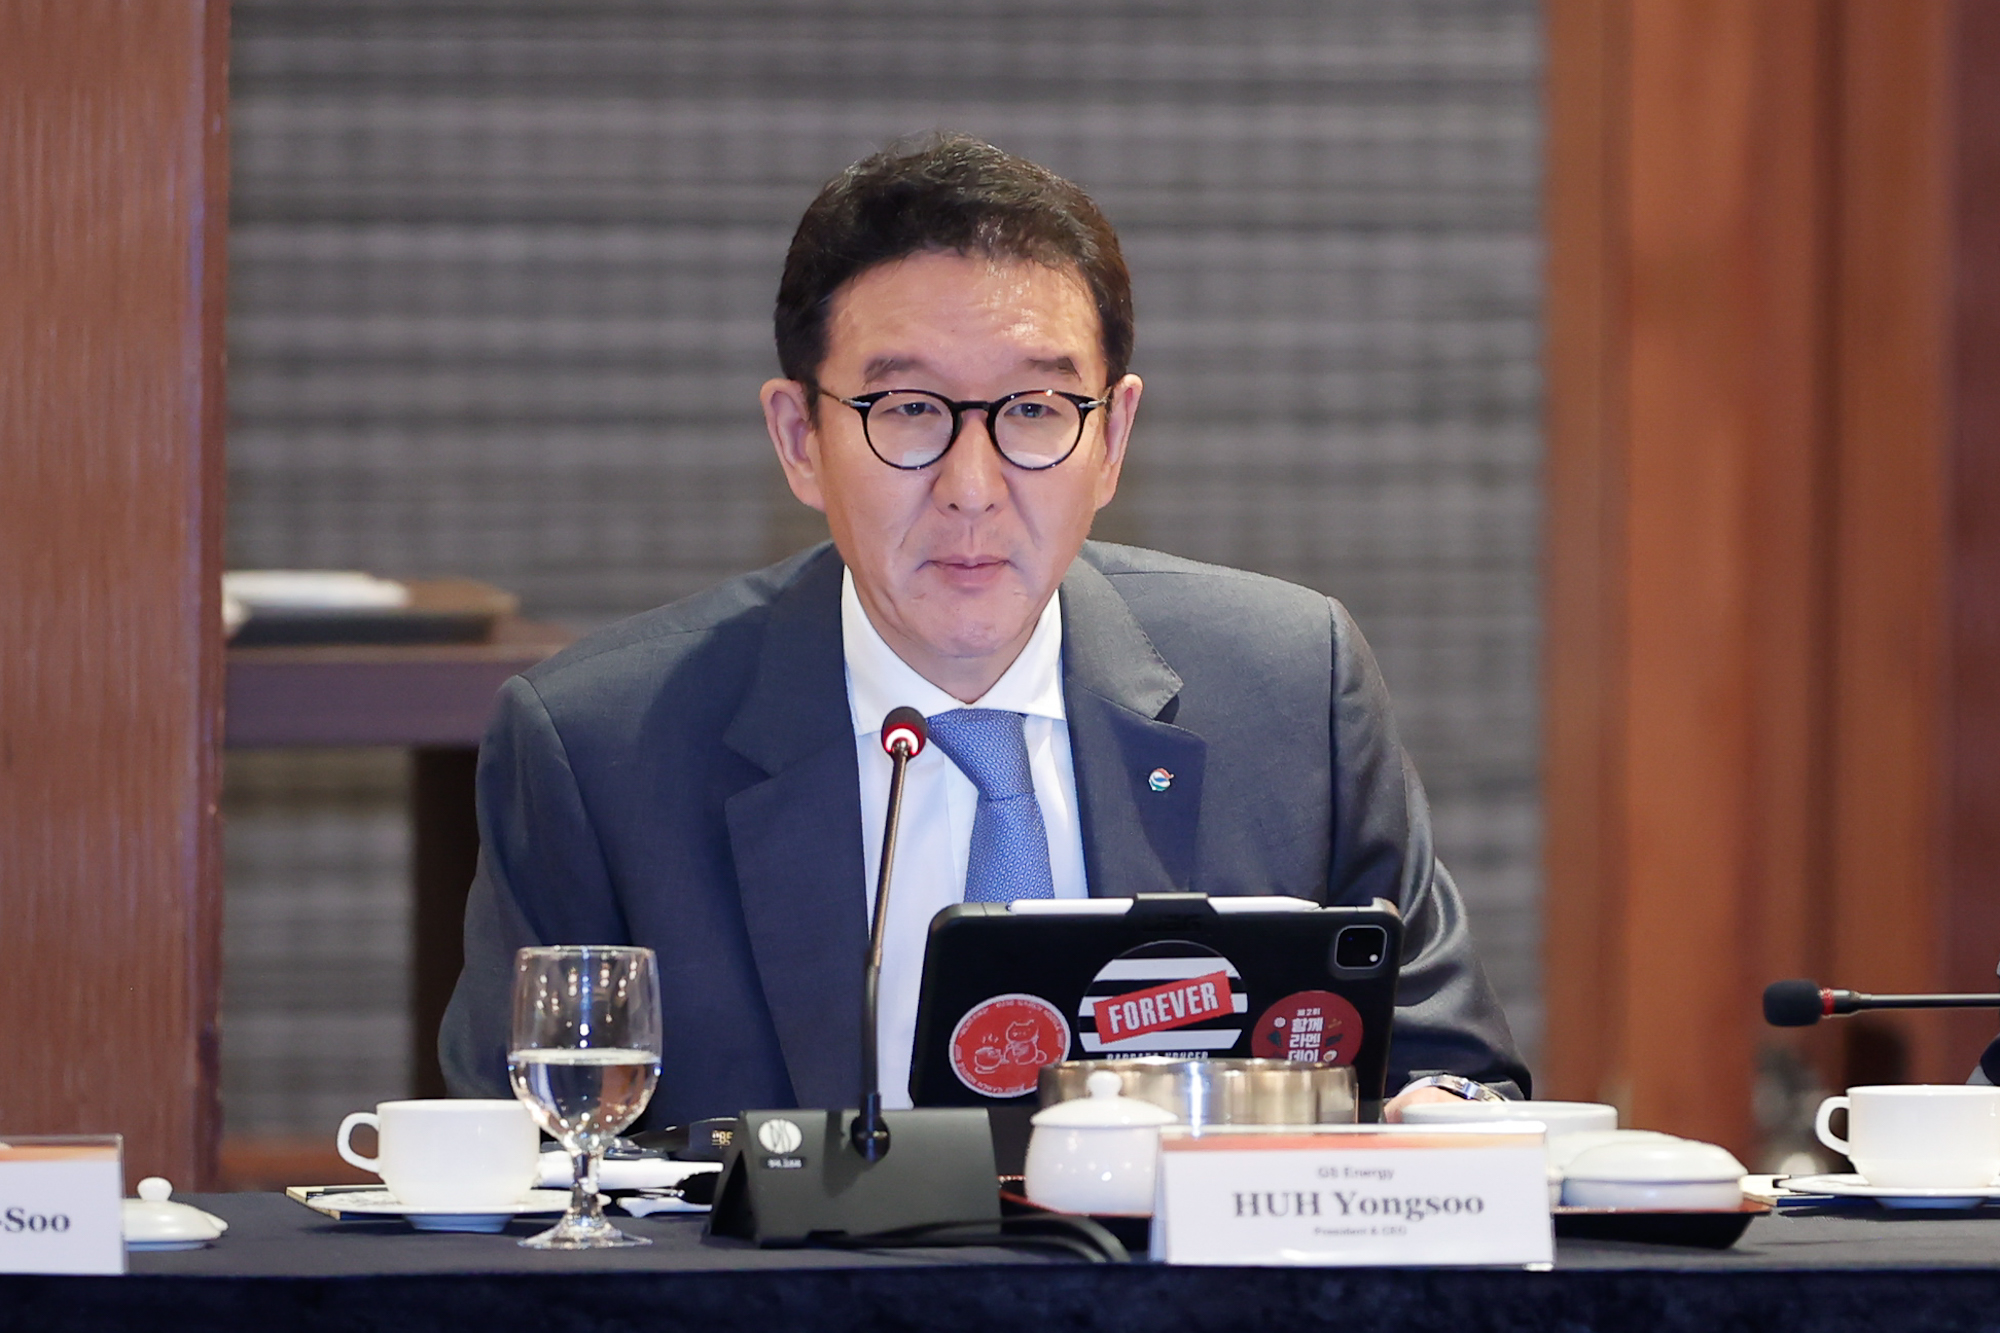 Chủ tịch tập đoàn GS Energy Huh Yongsoo tại tọa đàm. Ảnh: Nhật Bắc